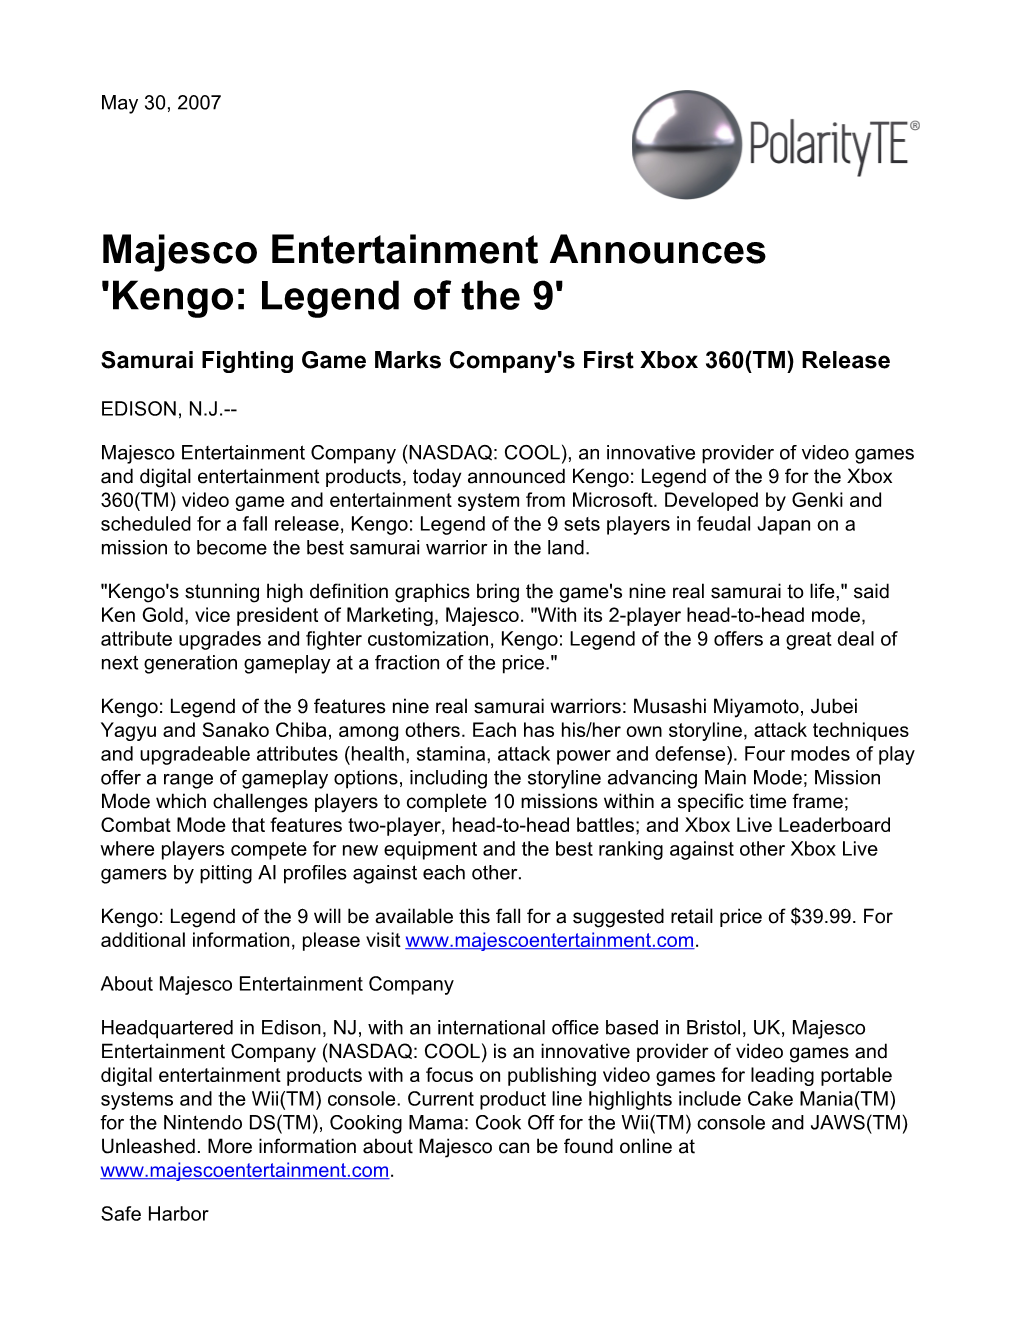 Majesco Entertainment Announces 'Kengo: Legend of the 9'